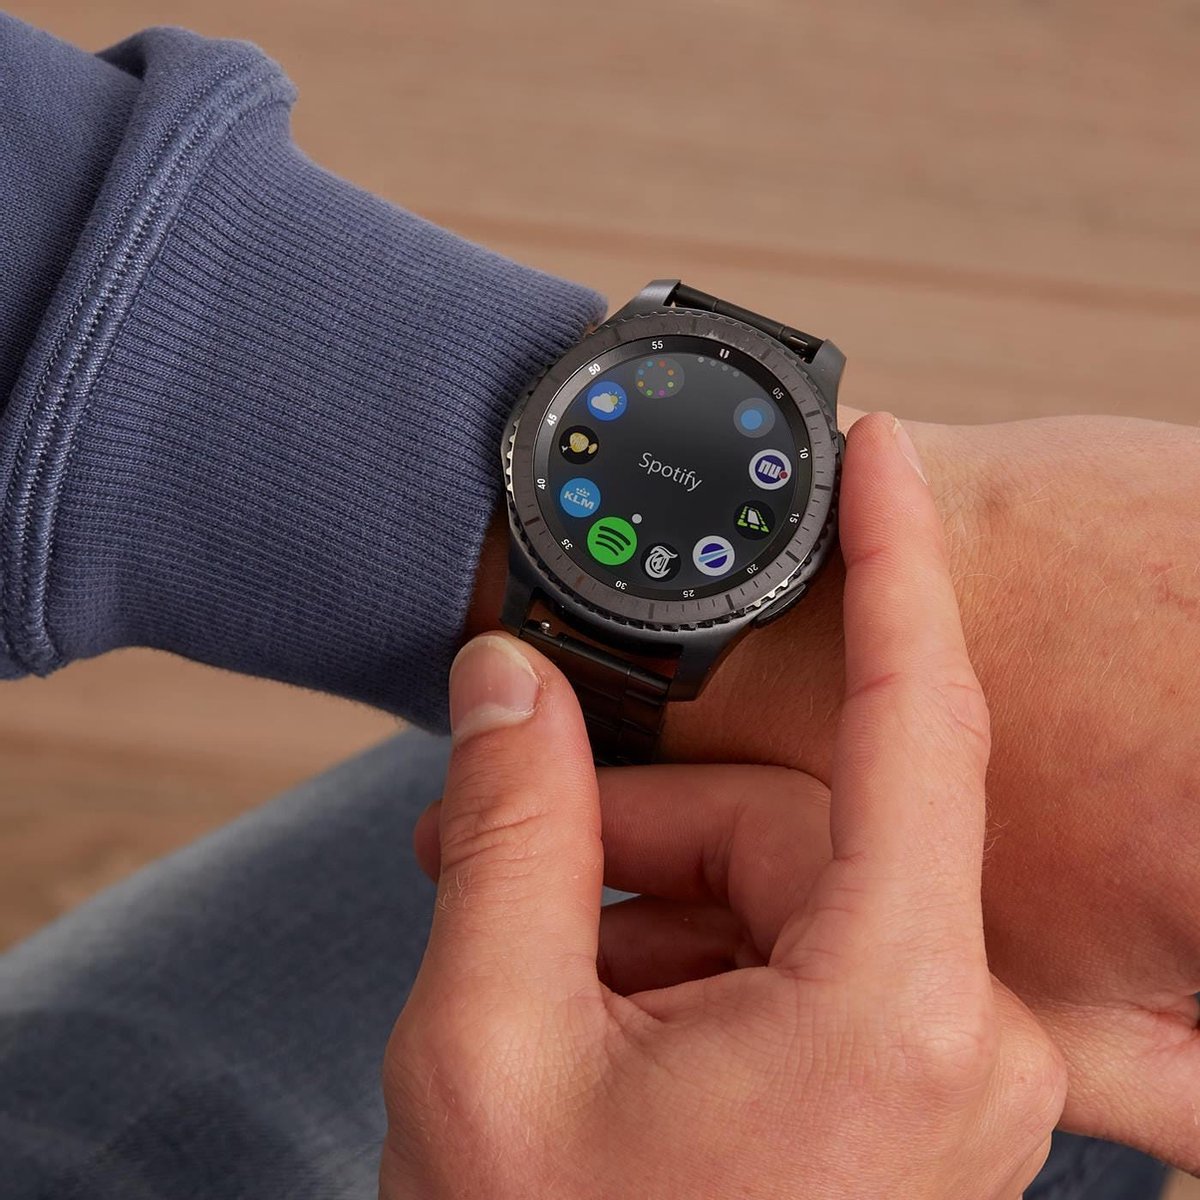 Bol Com Samsung Gear S3 Frontier Smartwatch Space Grey Special Edition